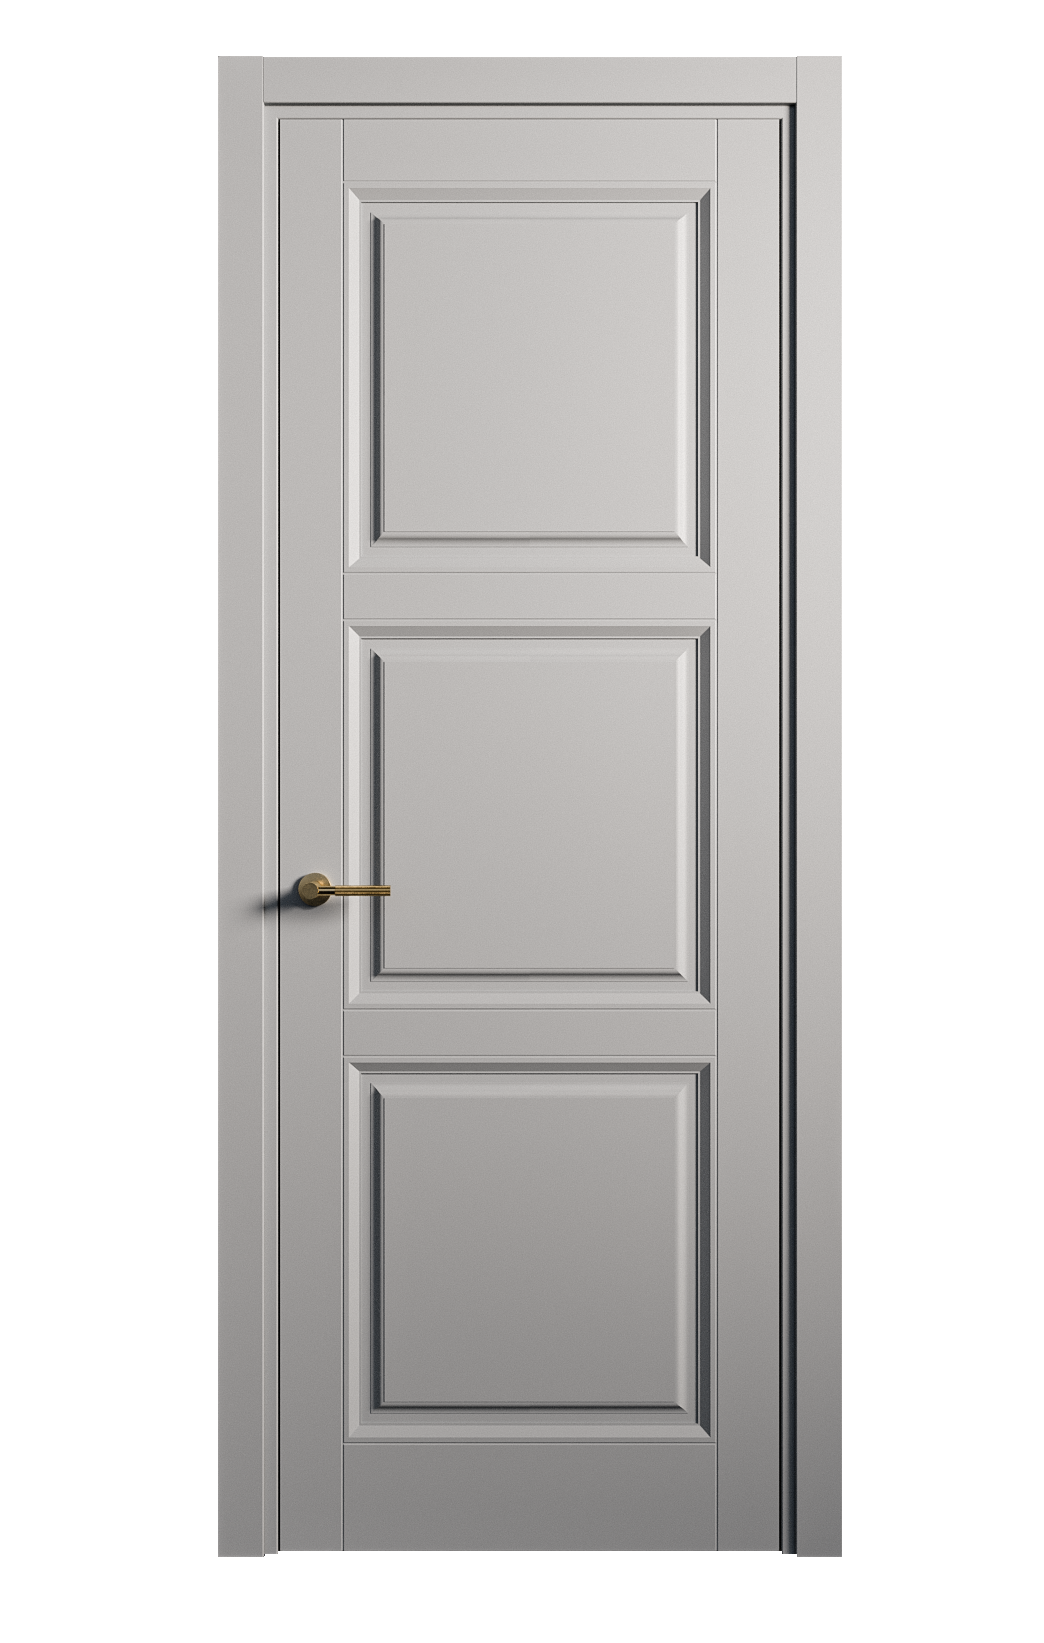 Межкомнатная дверь Venezia-3 глухая эмаль ral 7040 25773